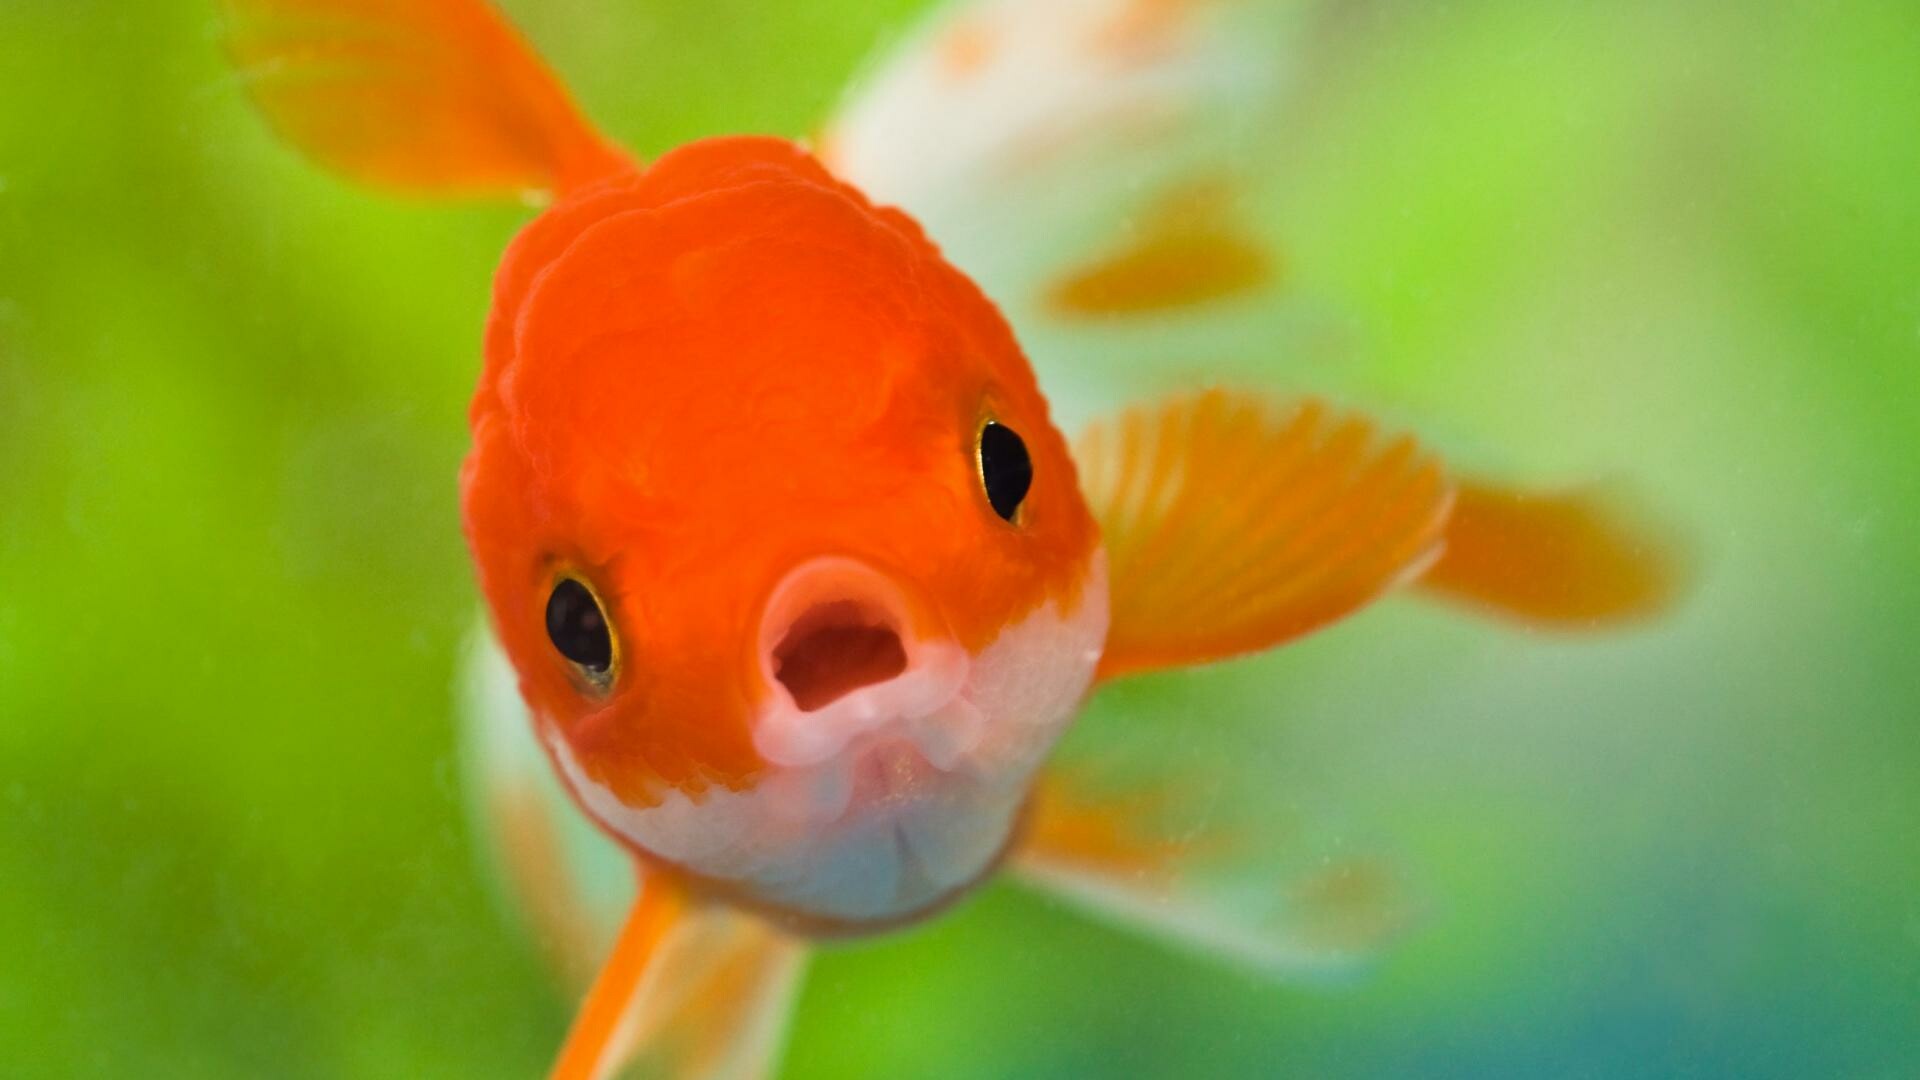 Cute fish, Underwater beauty, Colorful marine life, Aquatic animals, 1920x1080 Full HD Desktop